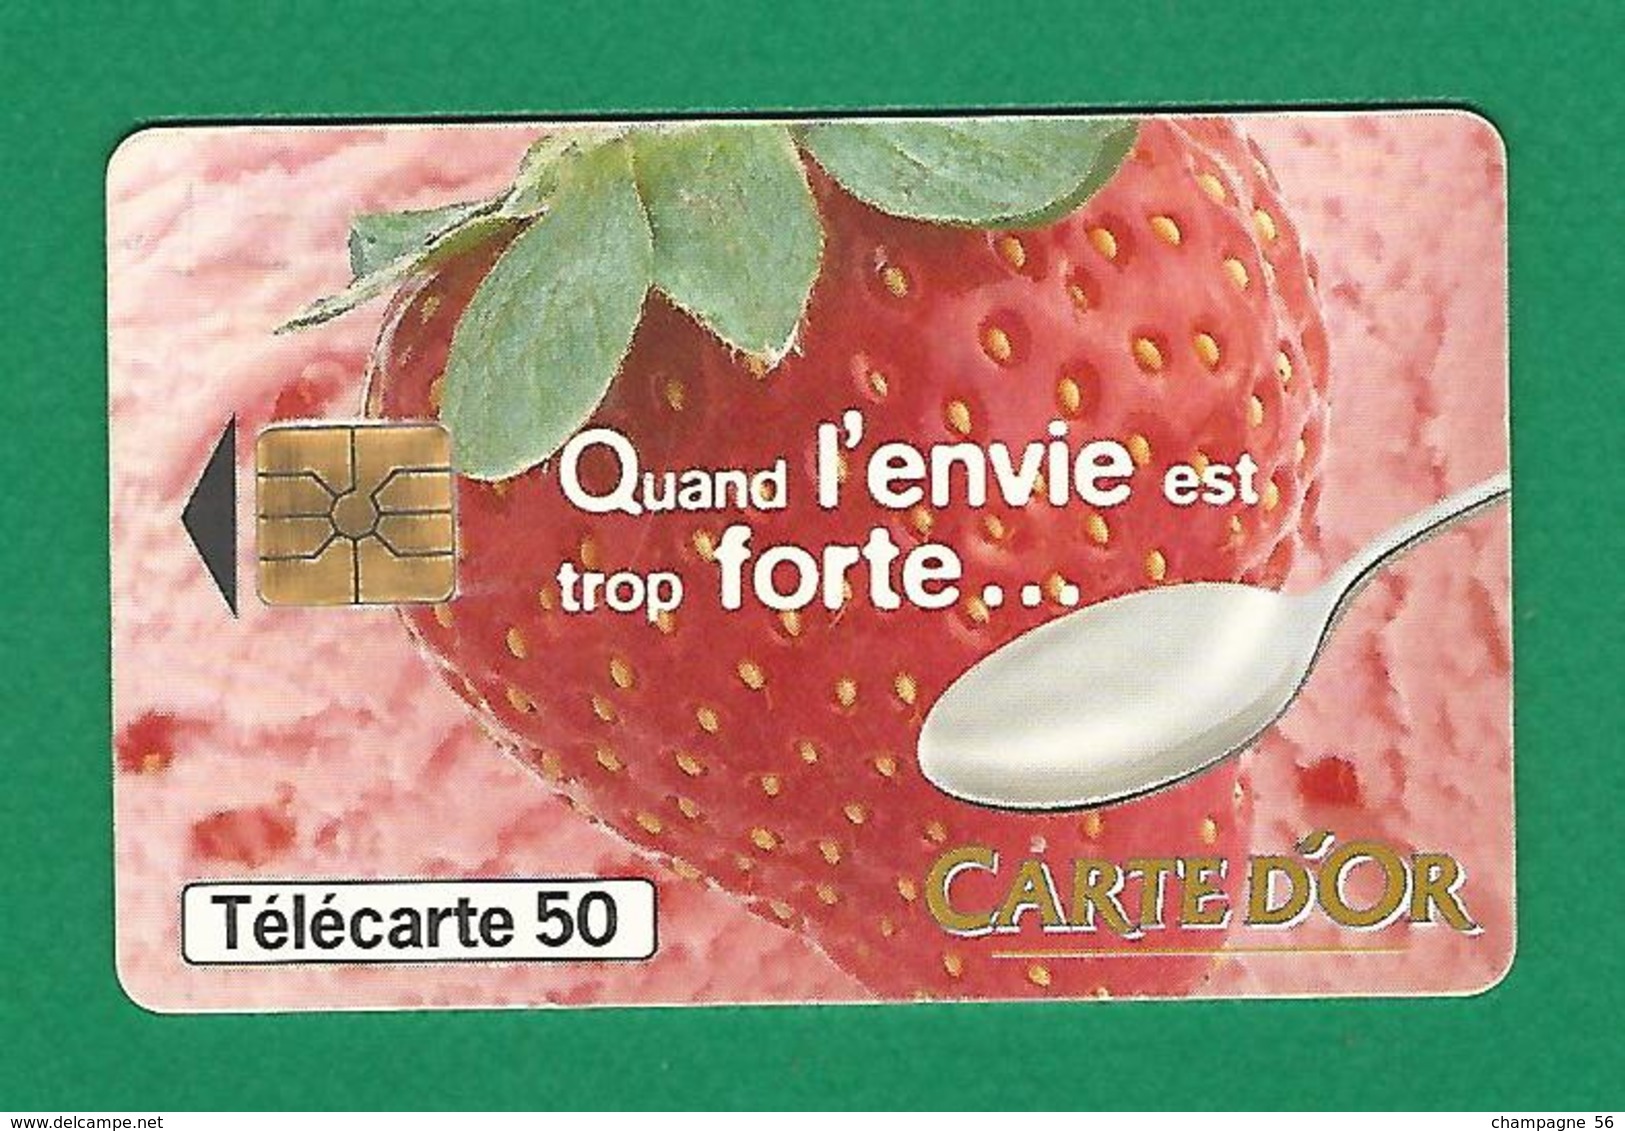 VARIÉTÉS 05 / 1997  CARTE D'OR   PUCE GEM1A   50 UNITÉS - Fehldrucke